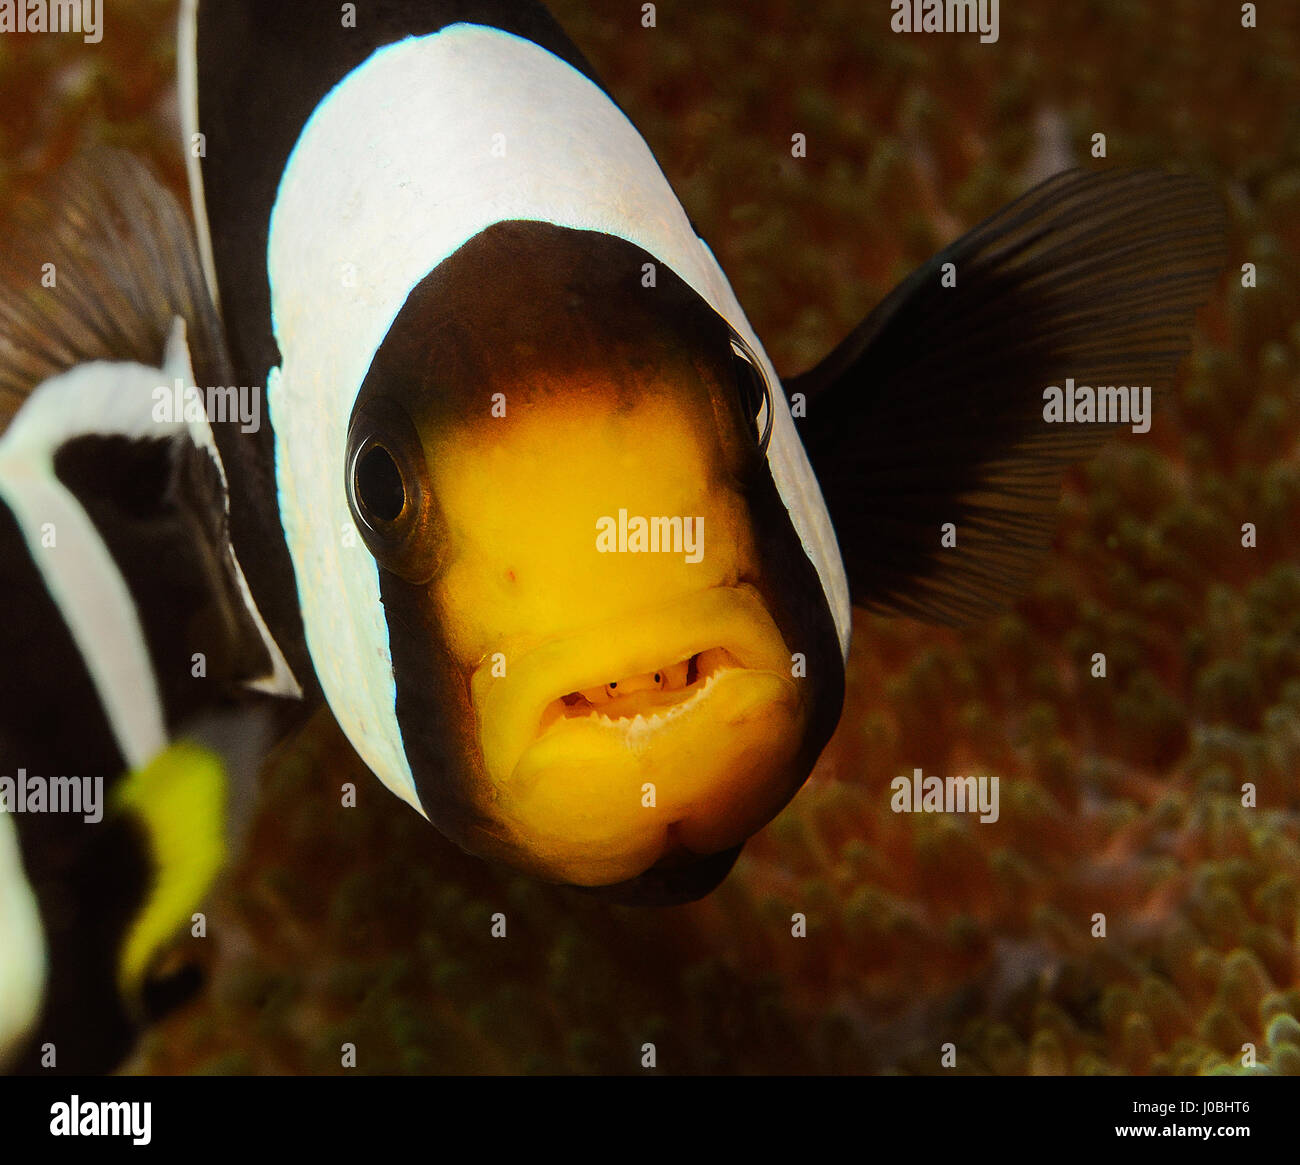 Ein Clown-Fisch mit einem mit Parasiten in seinen Mund genommen in Lembeh, Indonesien. WITZIGE Aufnahmen ergaben sich winzige Unterwasser Lebewesen erscheinen, einen Aufzug per Anhalter auf ihre größeren Pendants. Die Makro-Aufnahmen zeigen farbenfrohe Unterwasserwelt ruht auf der jeweils anderen und man zeigt sogar ein Clownfisch mit einem Parasiten sitzen in ihren Mund. In ein anderes Bild eine Muräne sitzt mit einer klaren Putzergarnelen kitzeln ihre Lippen und eine riesige Krake scheint auch die gleiche Garnelen Freund erworben haben, die über seinem Auge thront hat. Weitere beeindruckende Fotos zeigen ein paar Coleman Garnelen auf einem Feuer s Stockfoto